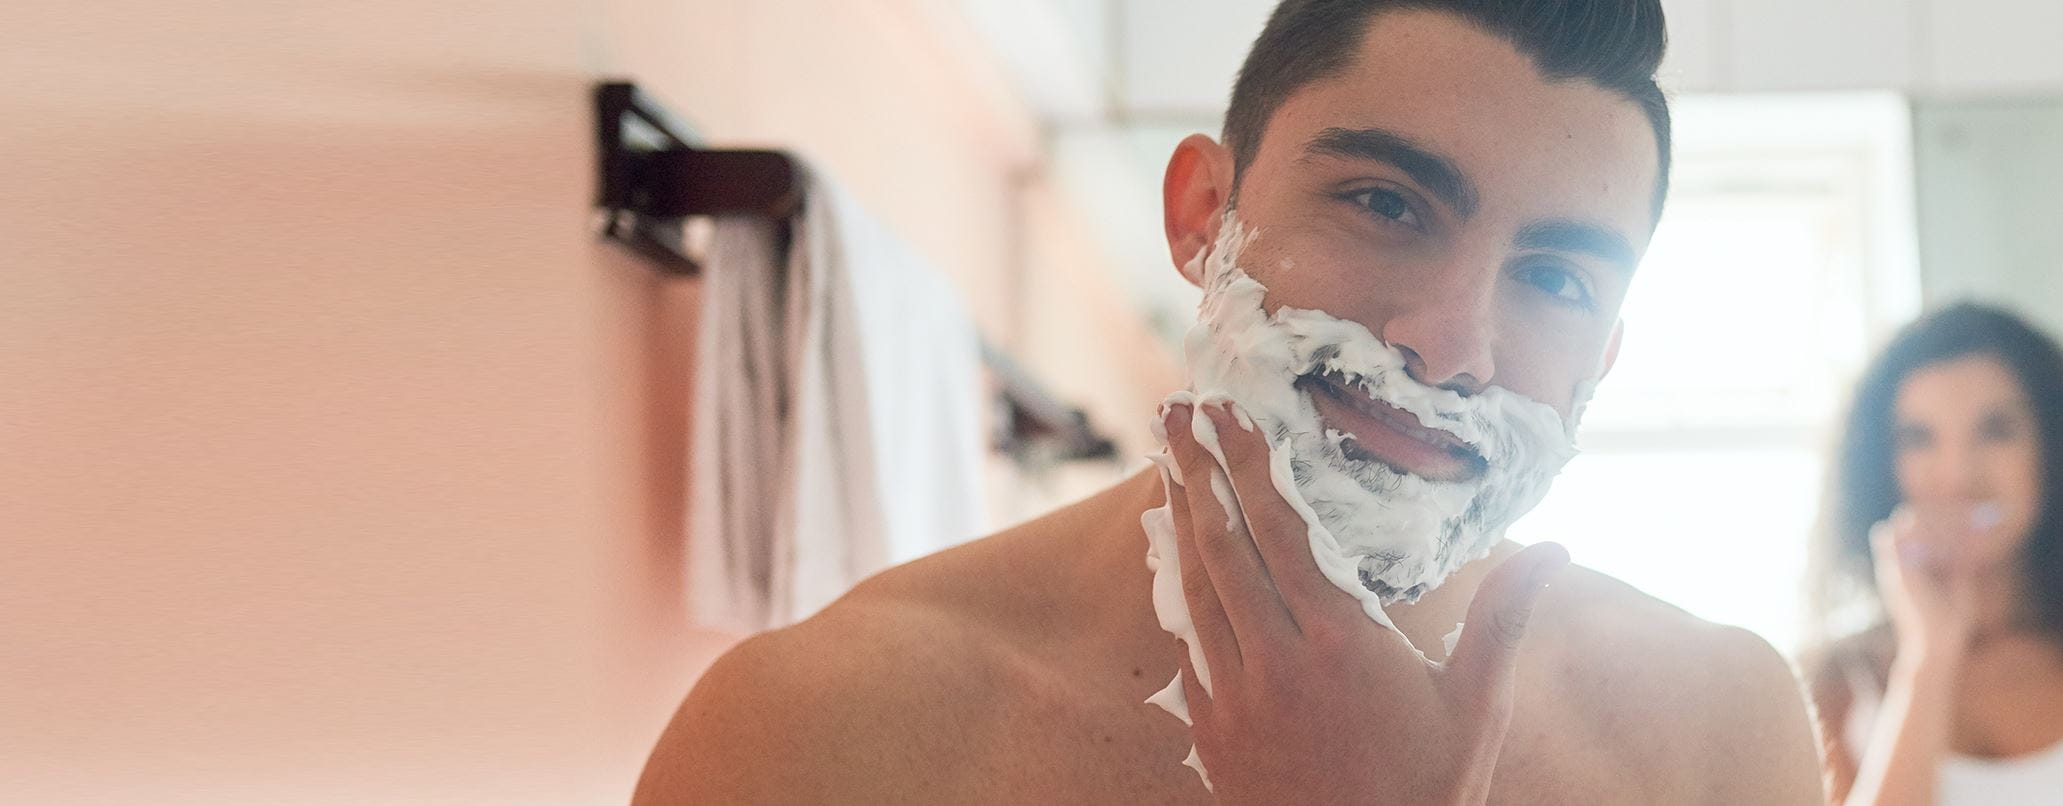 Bart rasieren: Nass oder trocken?